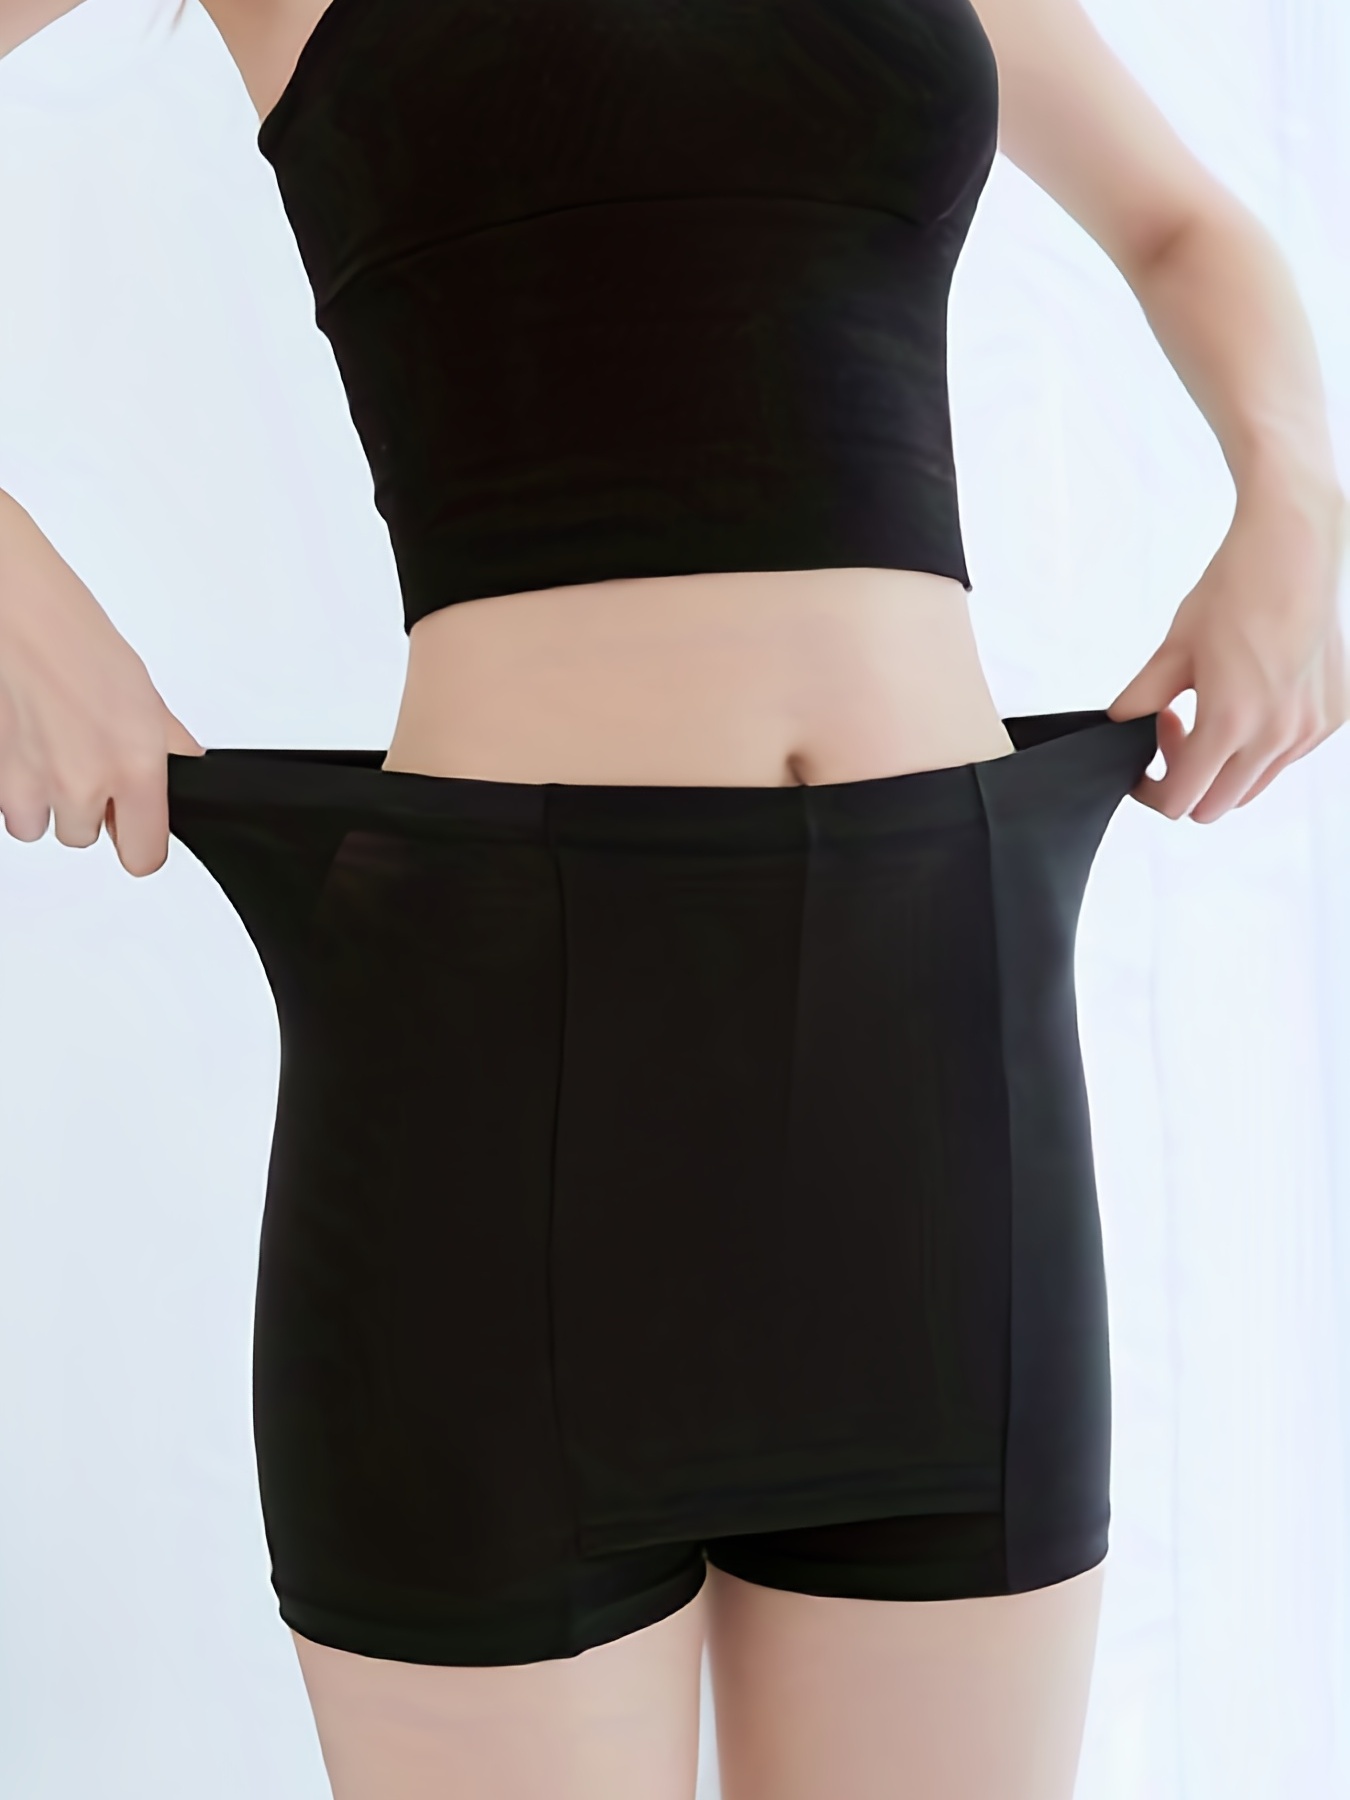 Ladies Anti-chafing Underwear Underwear Abdominal Safety Shorts